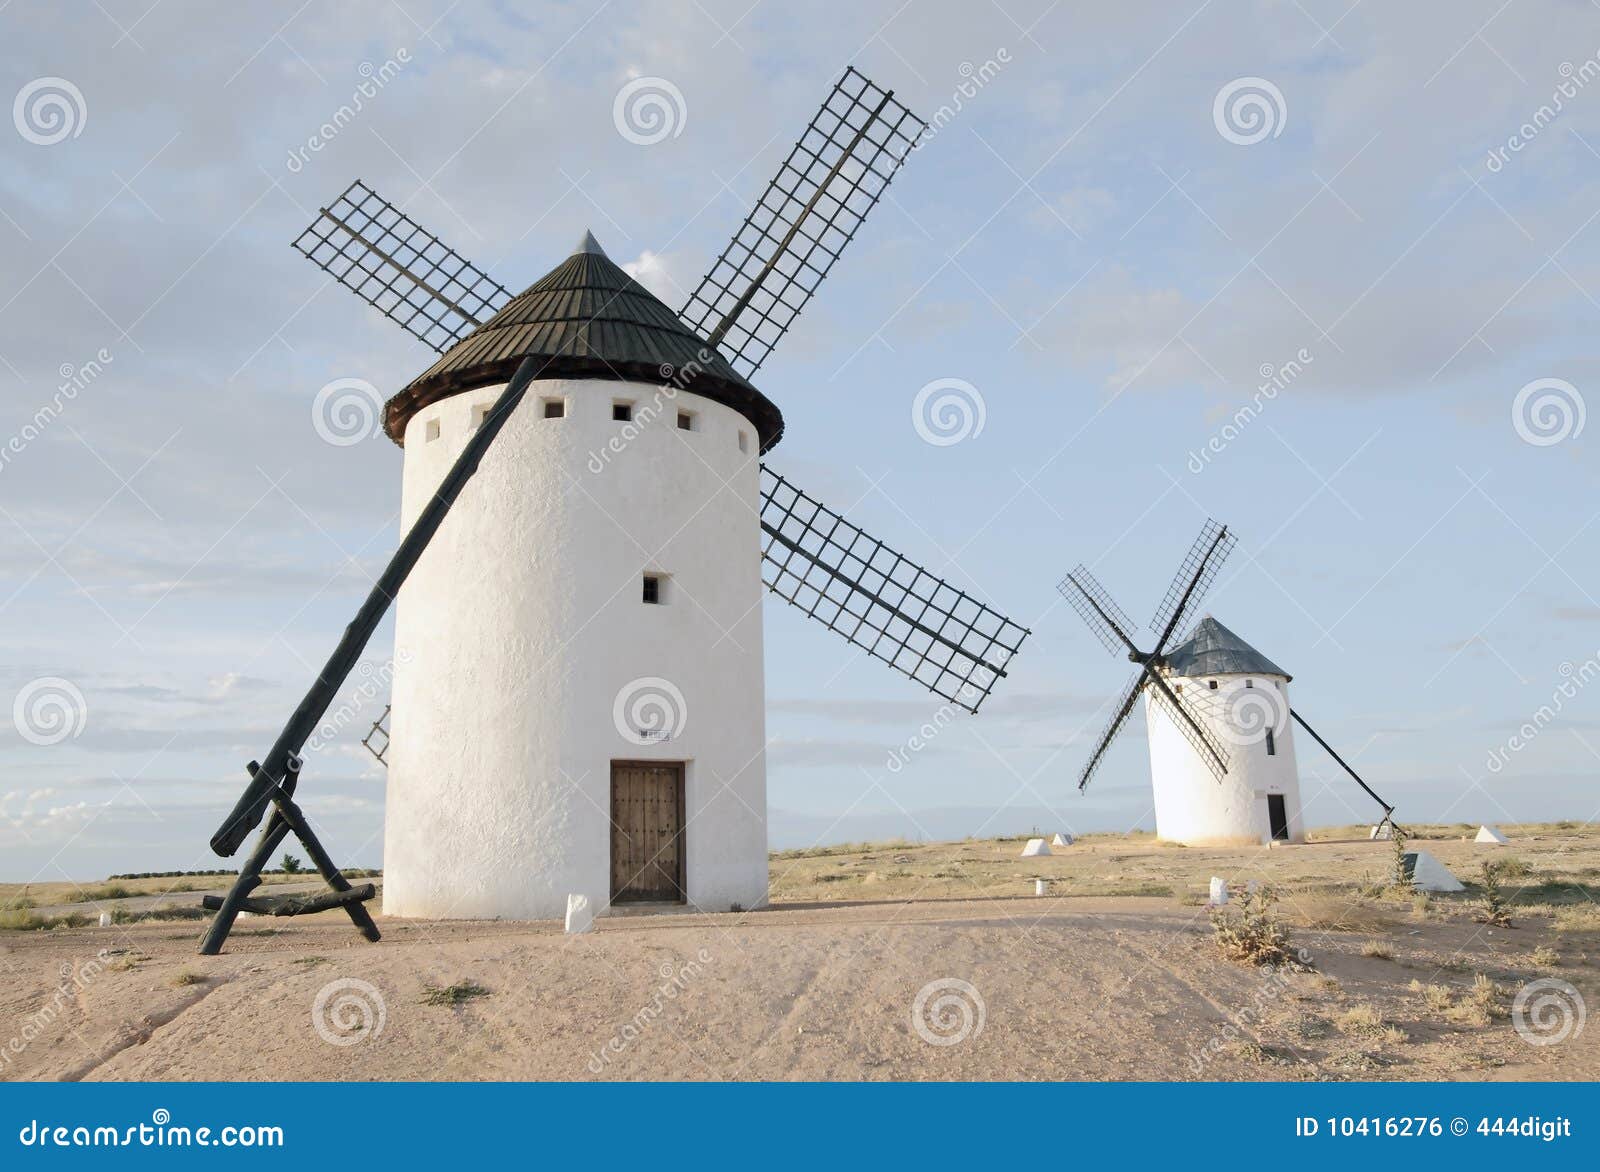 windmills at campo de criptana, ciudad real, spain